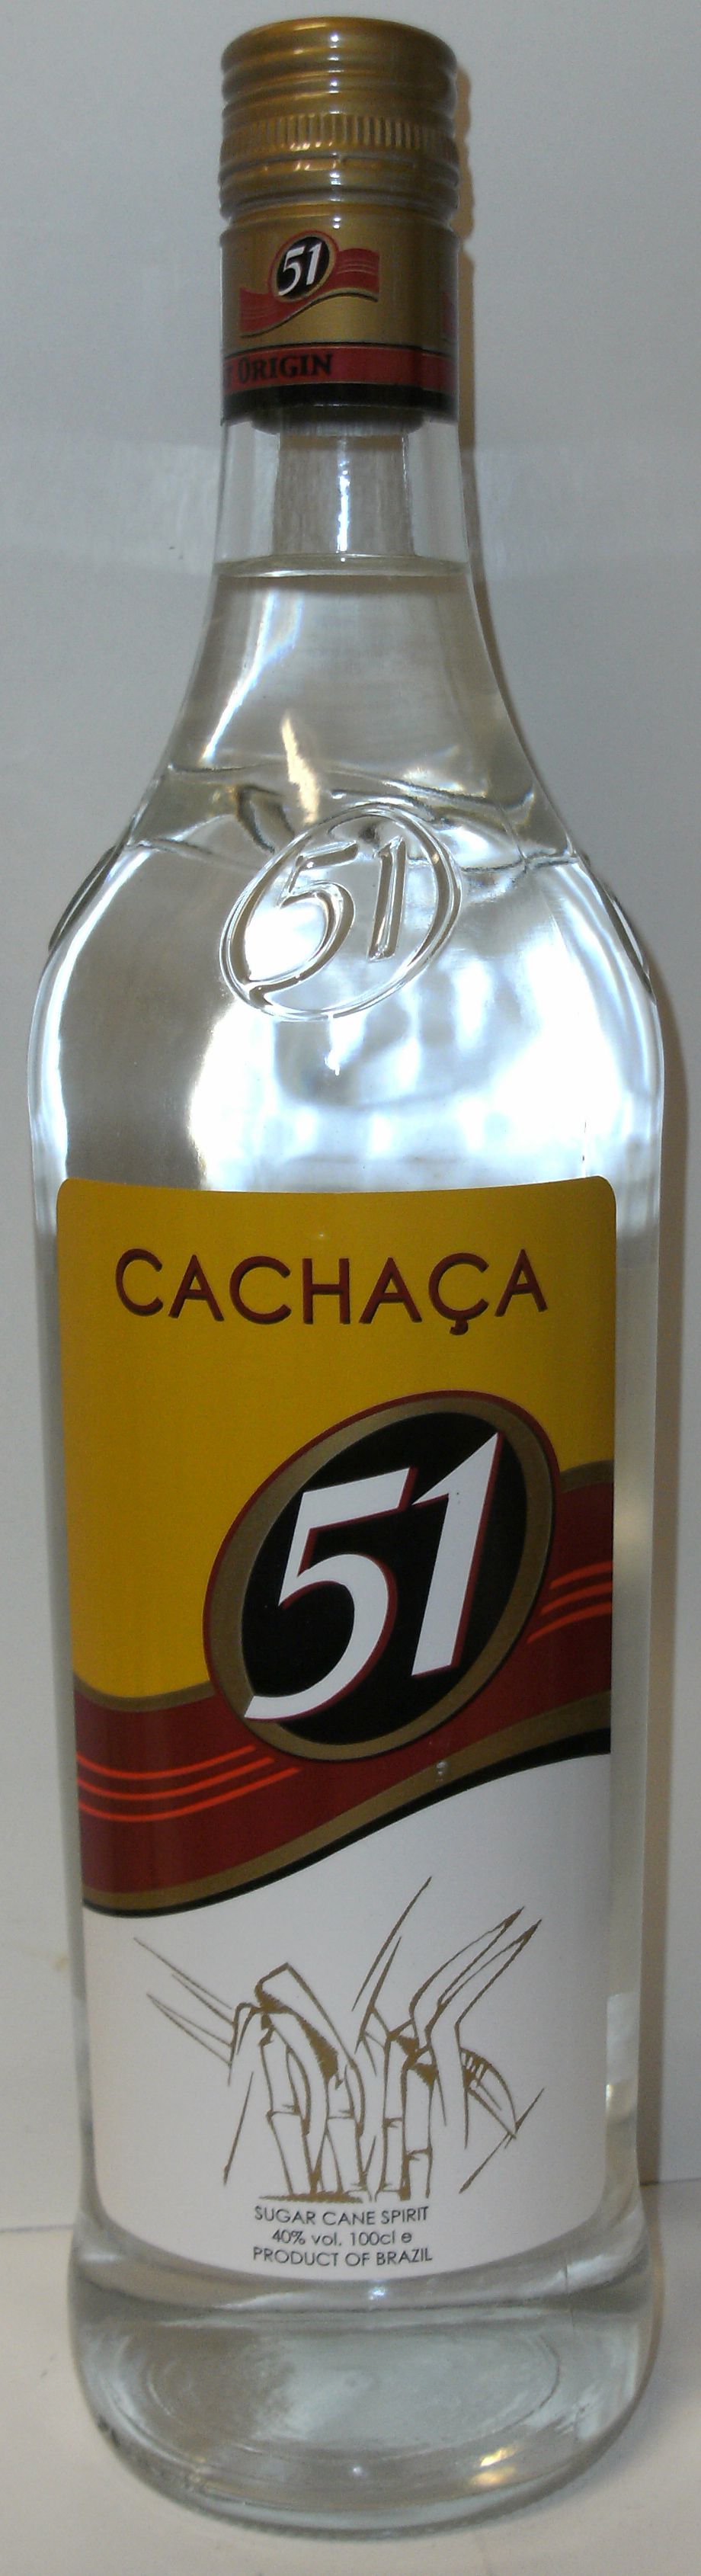 Rum: Cachaca 51 - 40% - 1.0 ltr. - Pirassununga